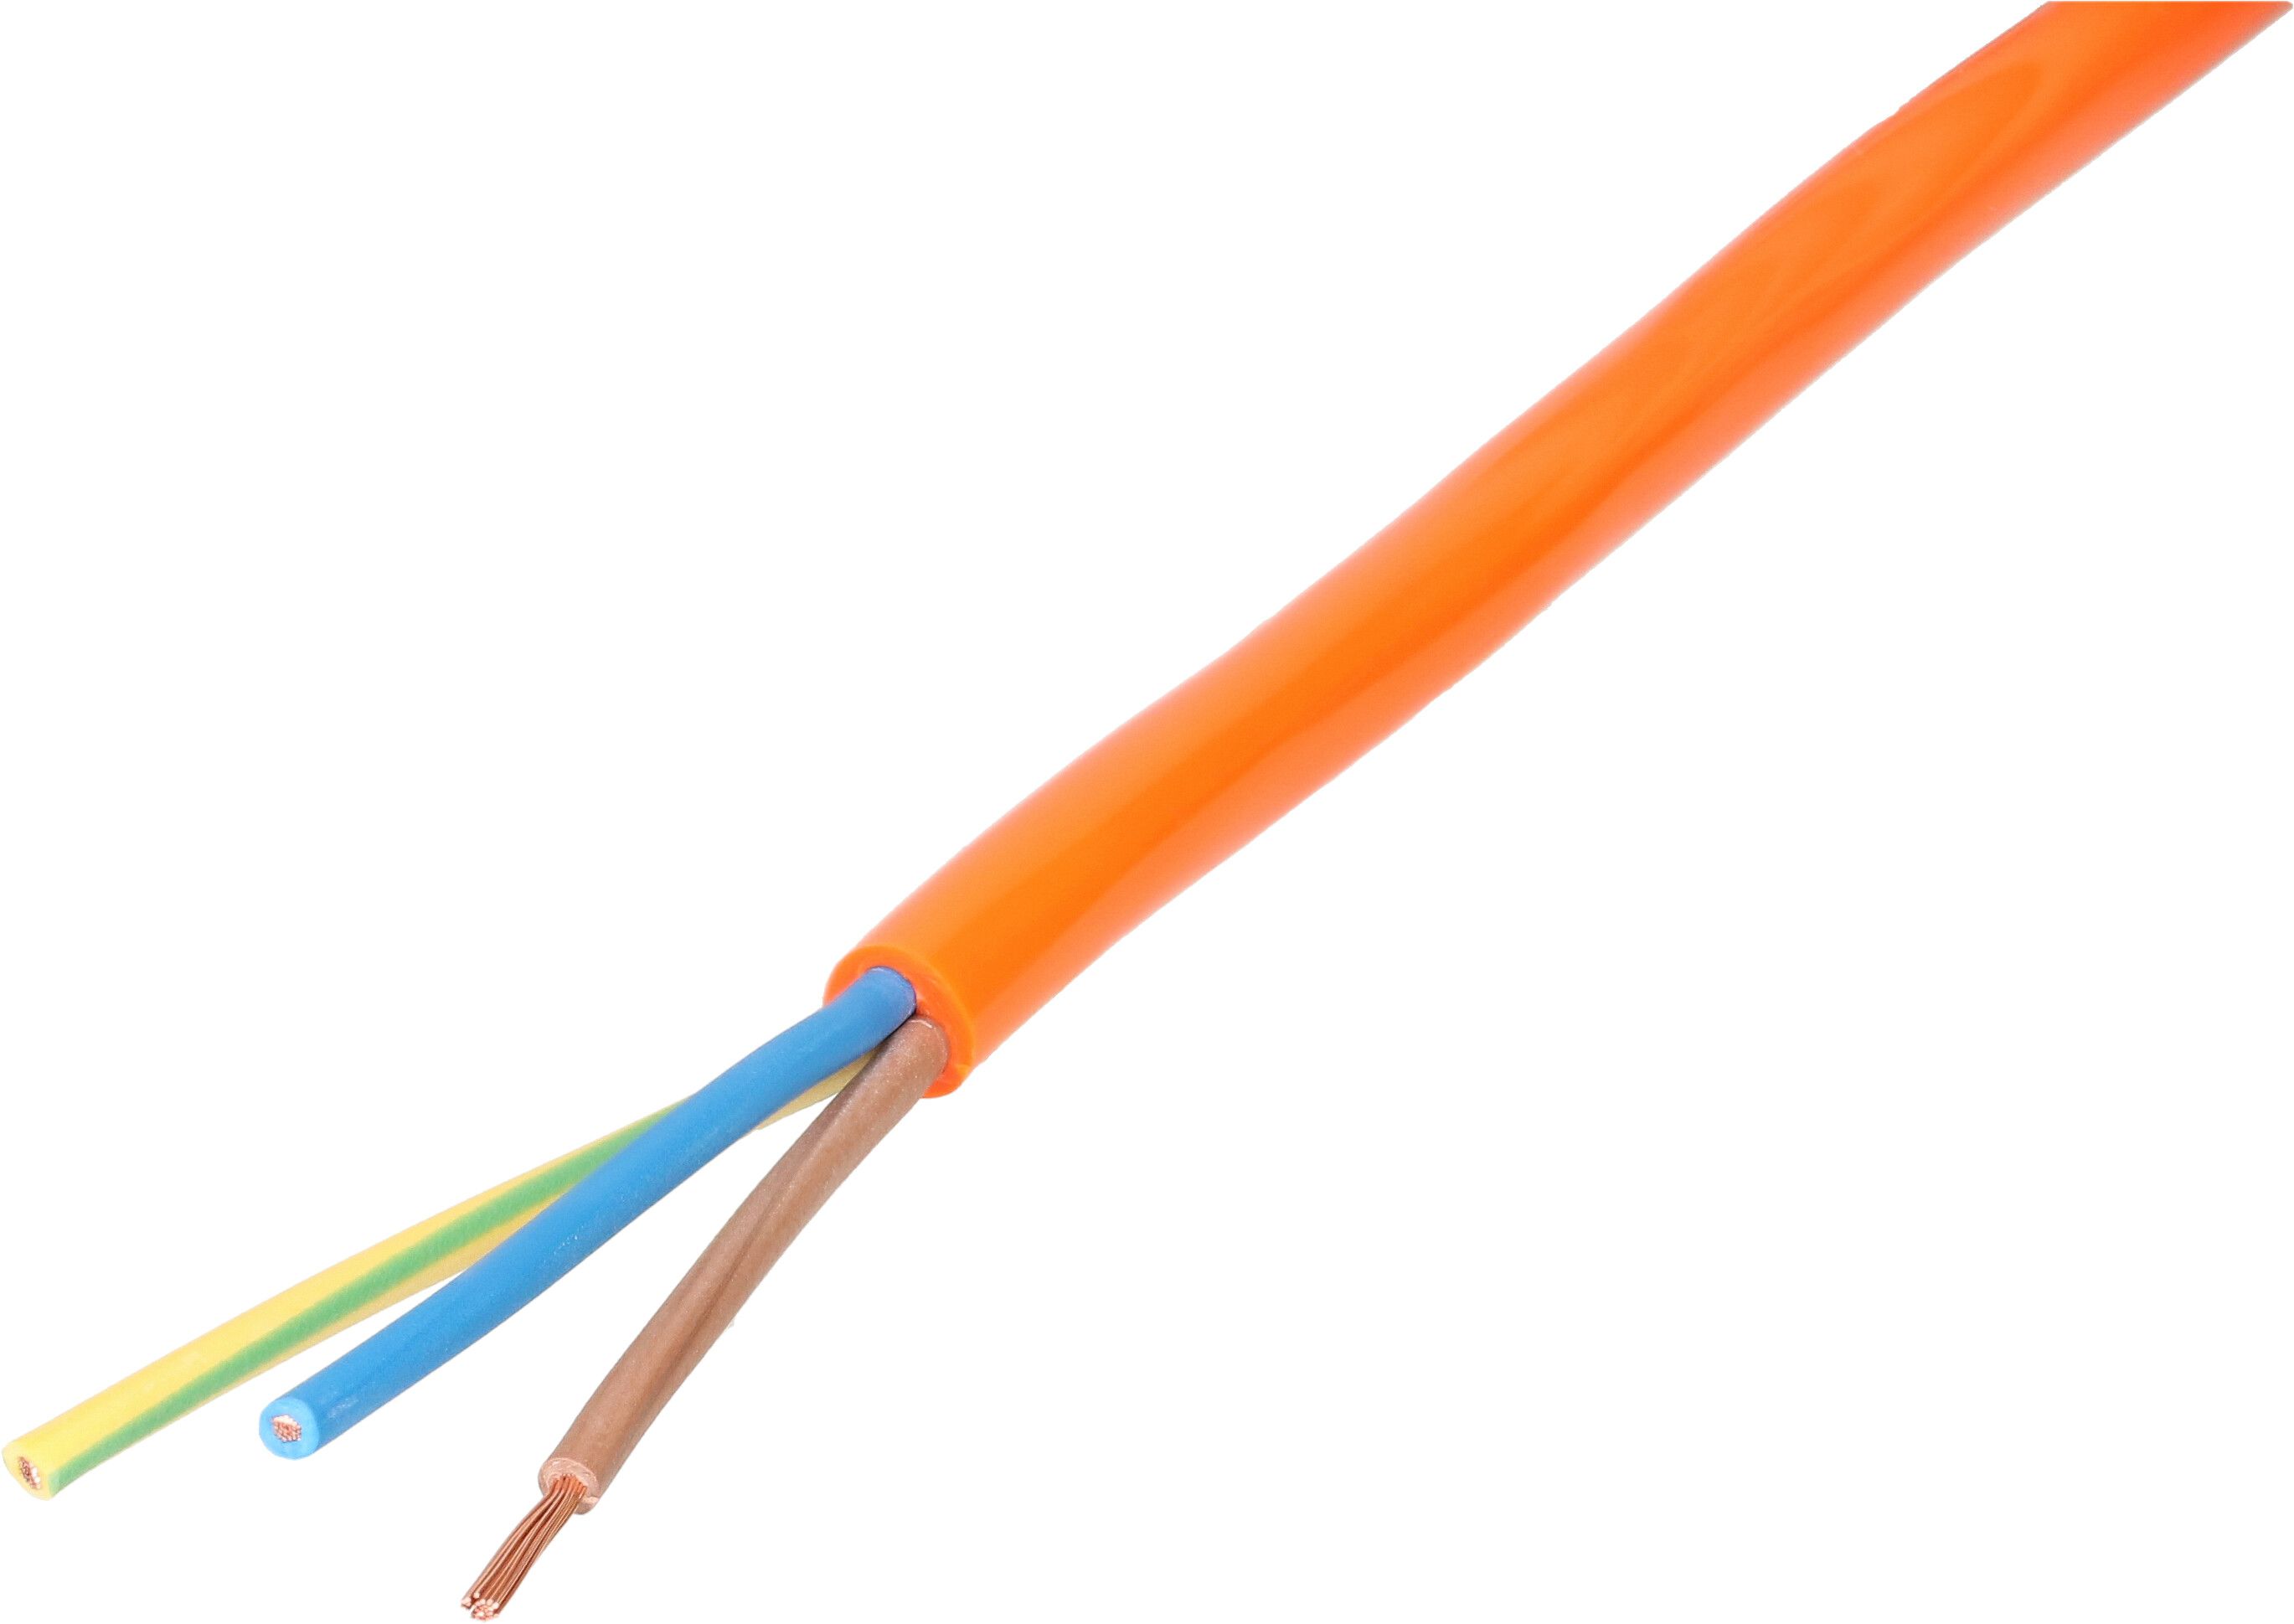 EPR/PUR-Kabel H07BQ-F3G1.5 20m orange